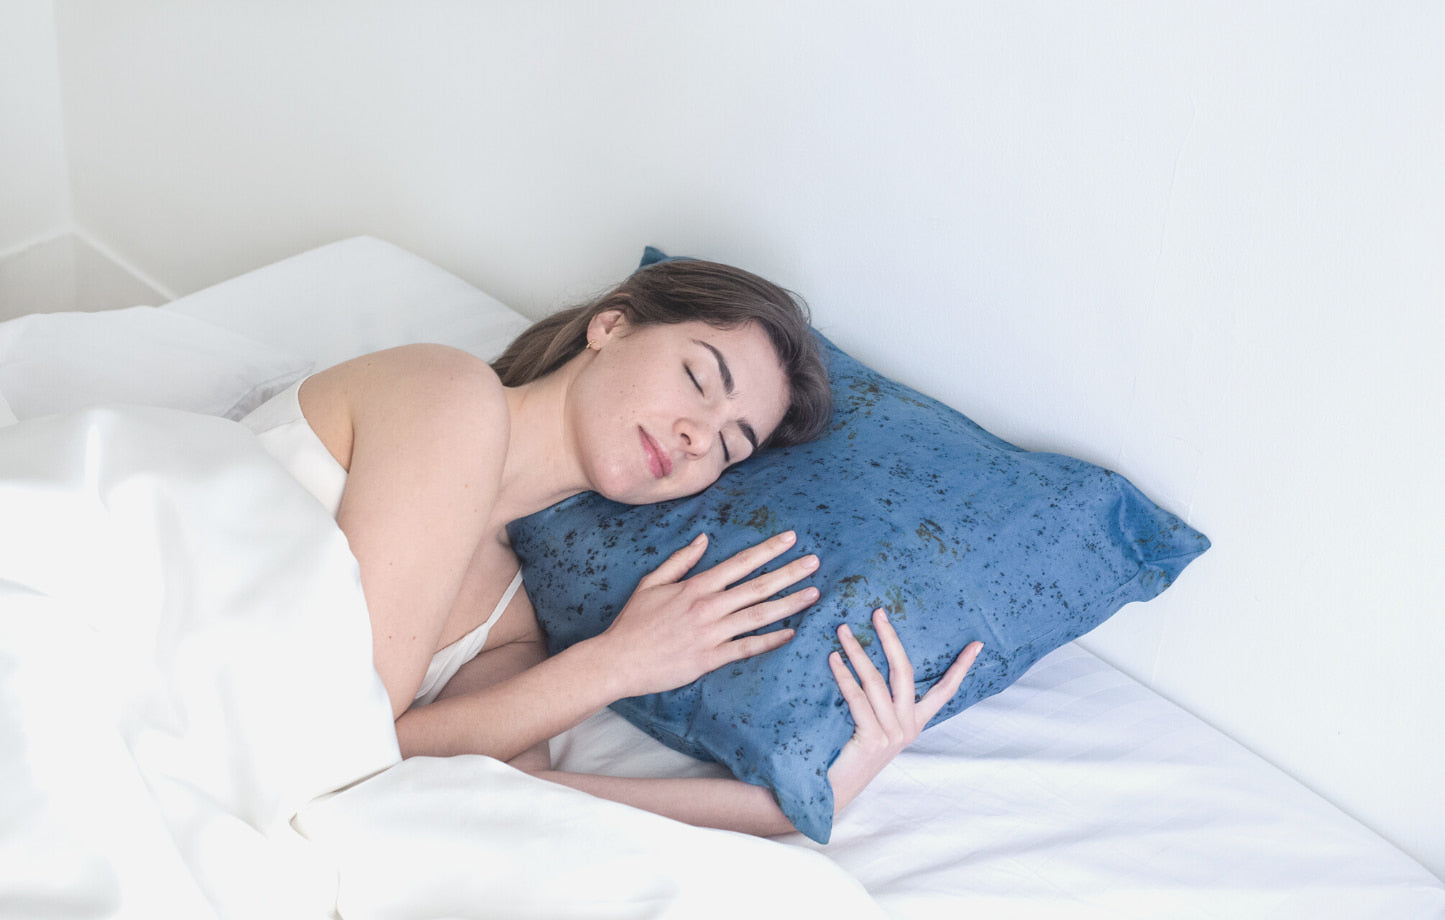 Faut-il dormir sur une taie en soie ? – Mon blog de fille